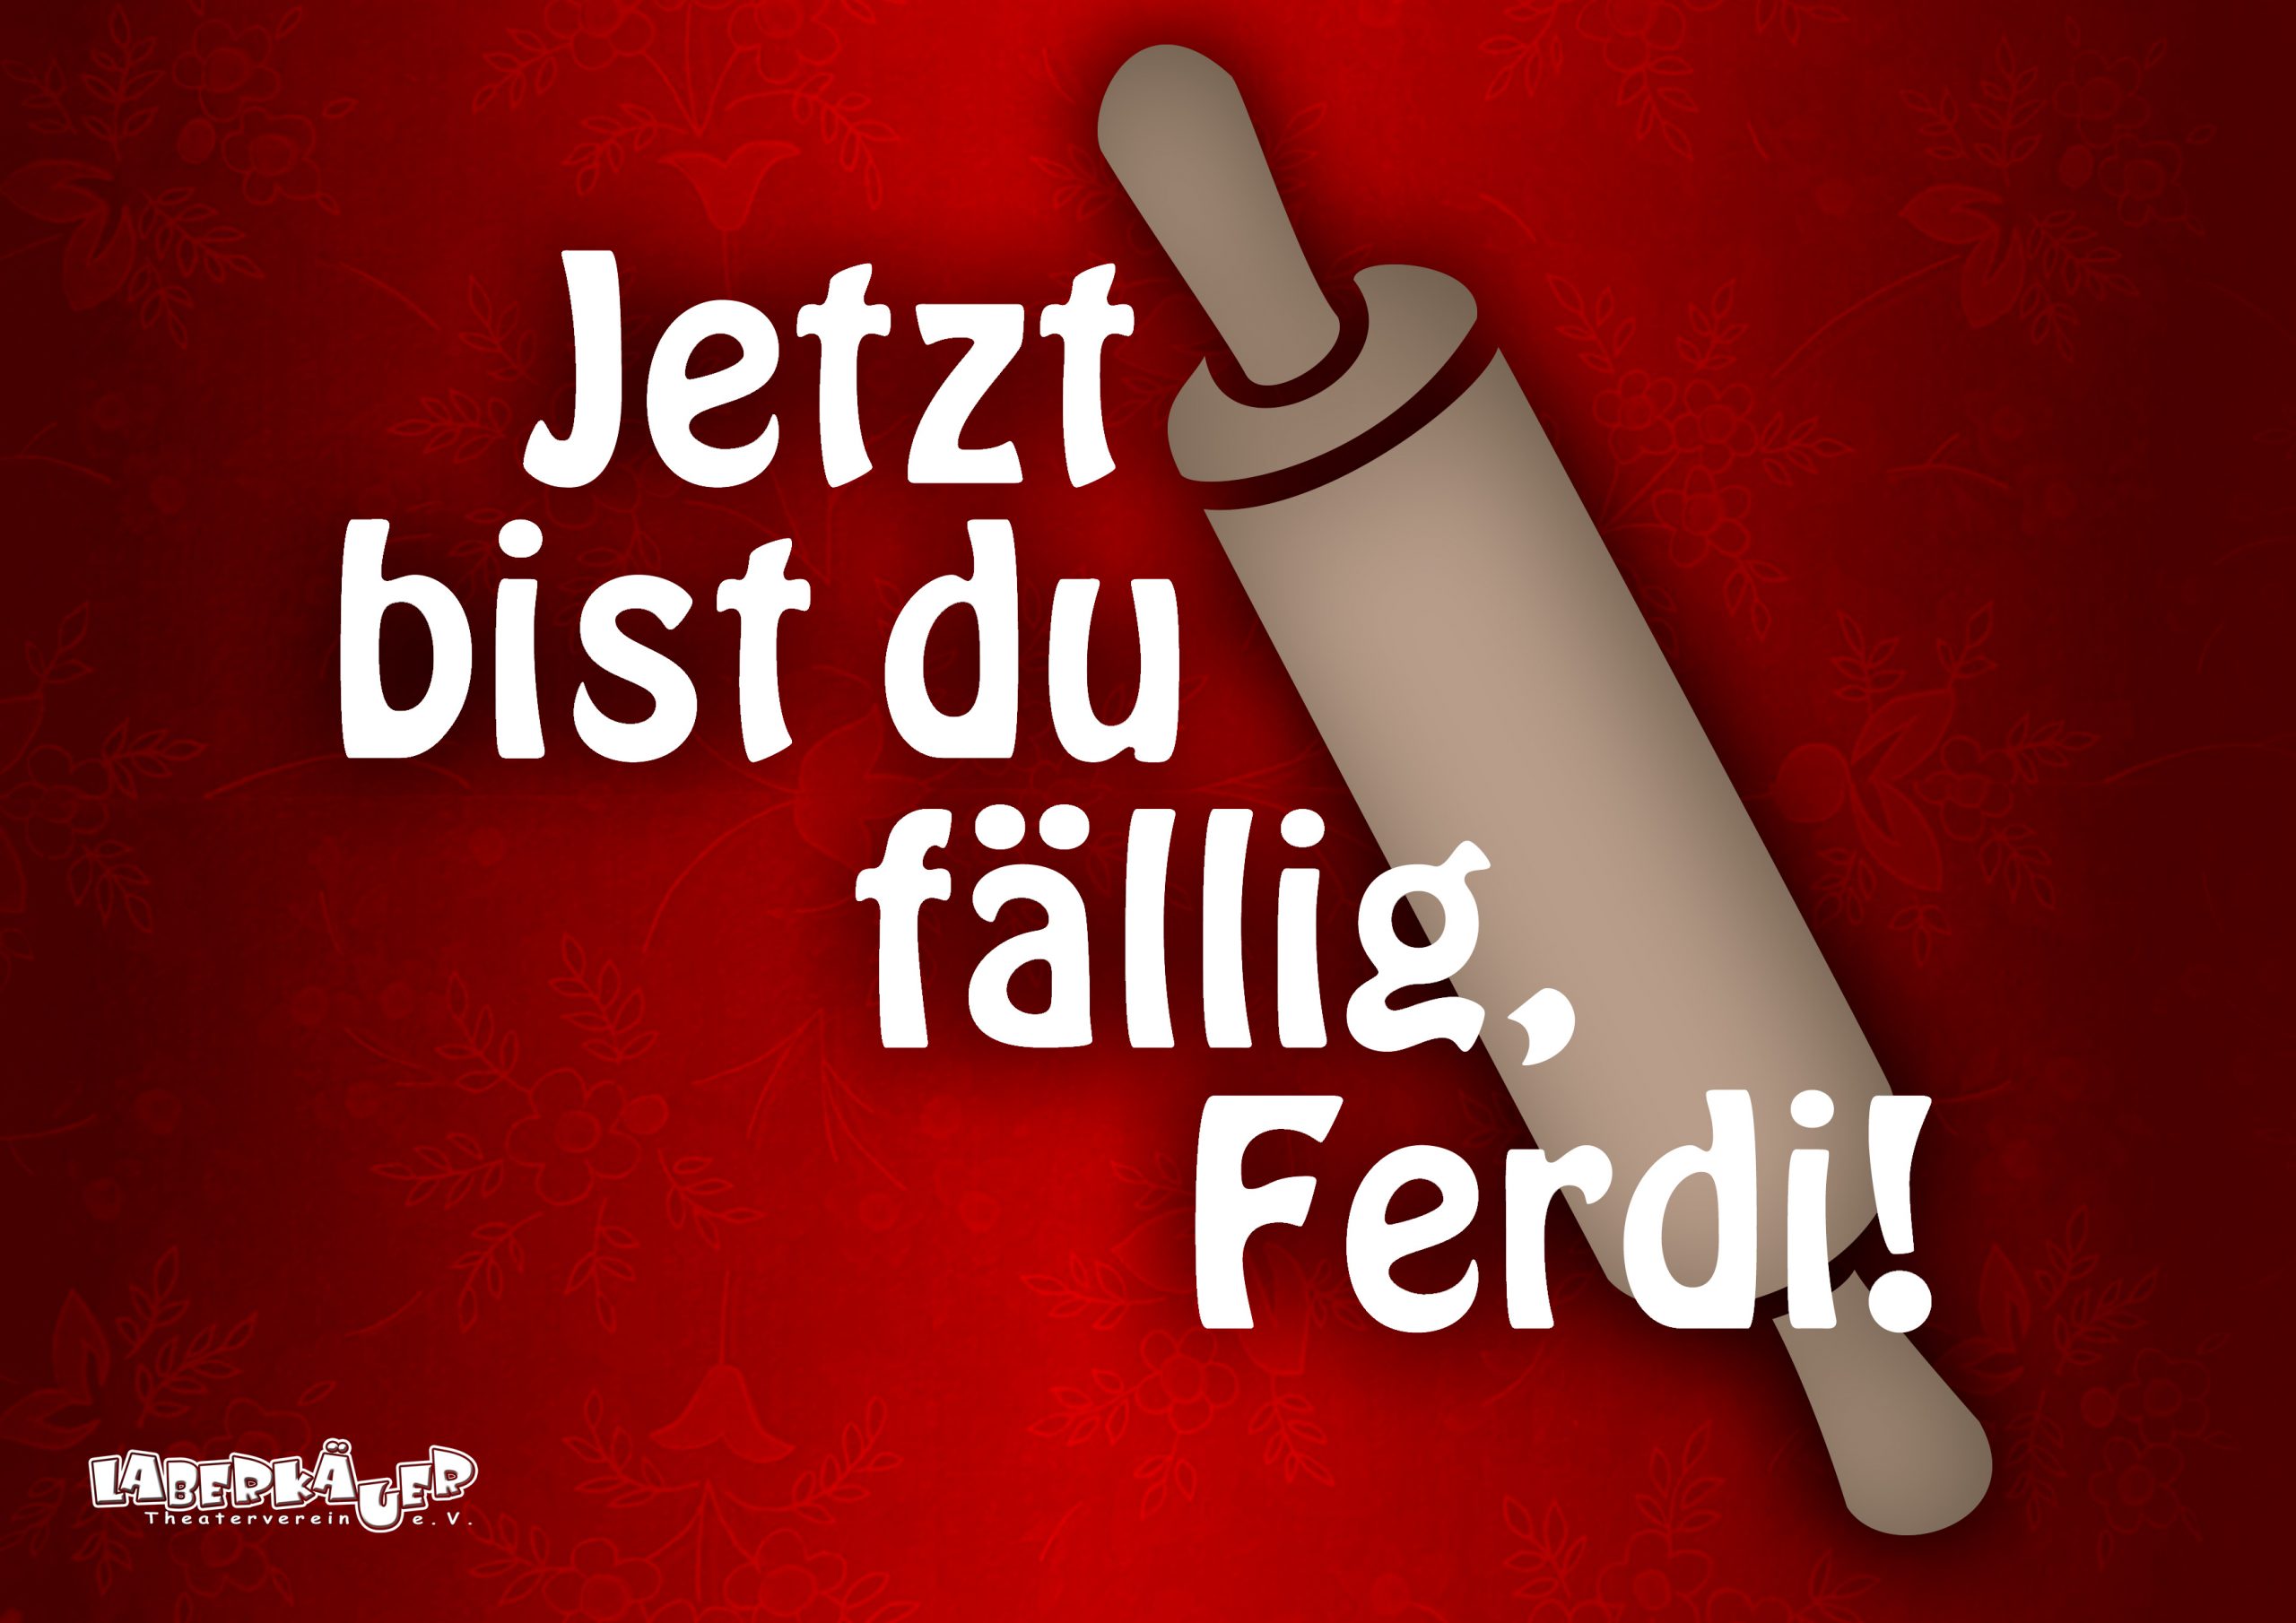 Titelbild mit einem Nudelholz und dem Stücktitel "Jetzt bist du fällig, Ferdi!"